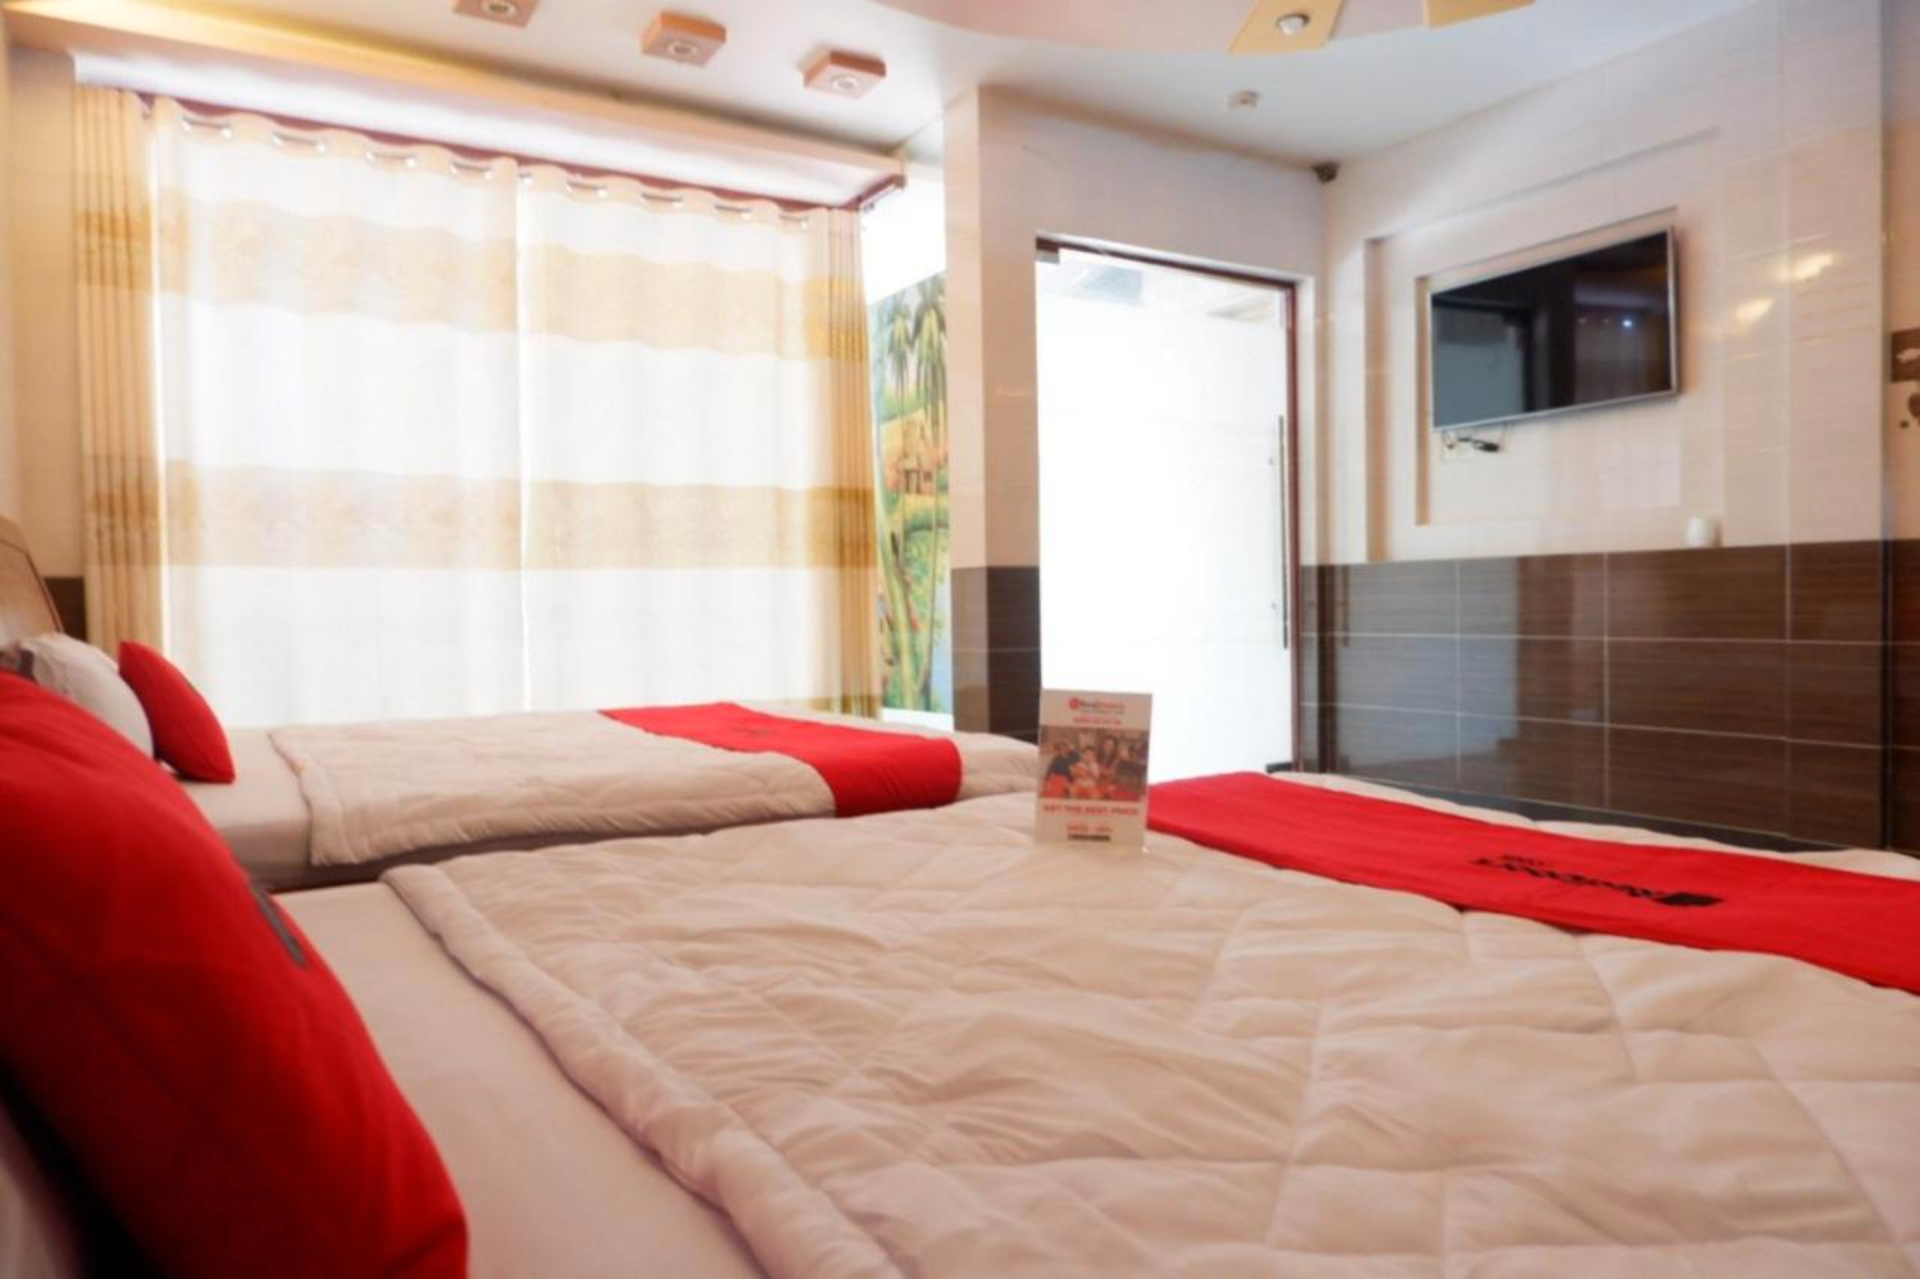 Bedroom 2, RedDoorz Ngoc Thanh Hotel, Binh Tan